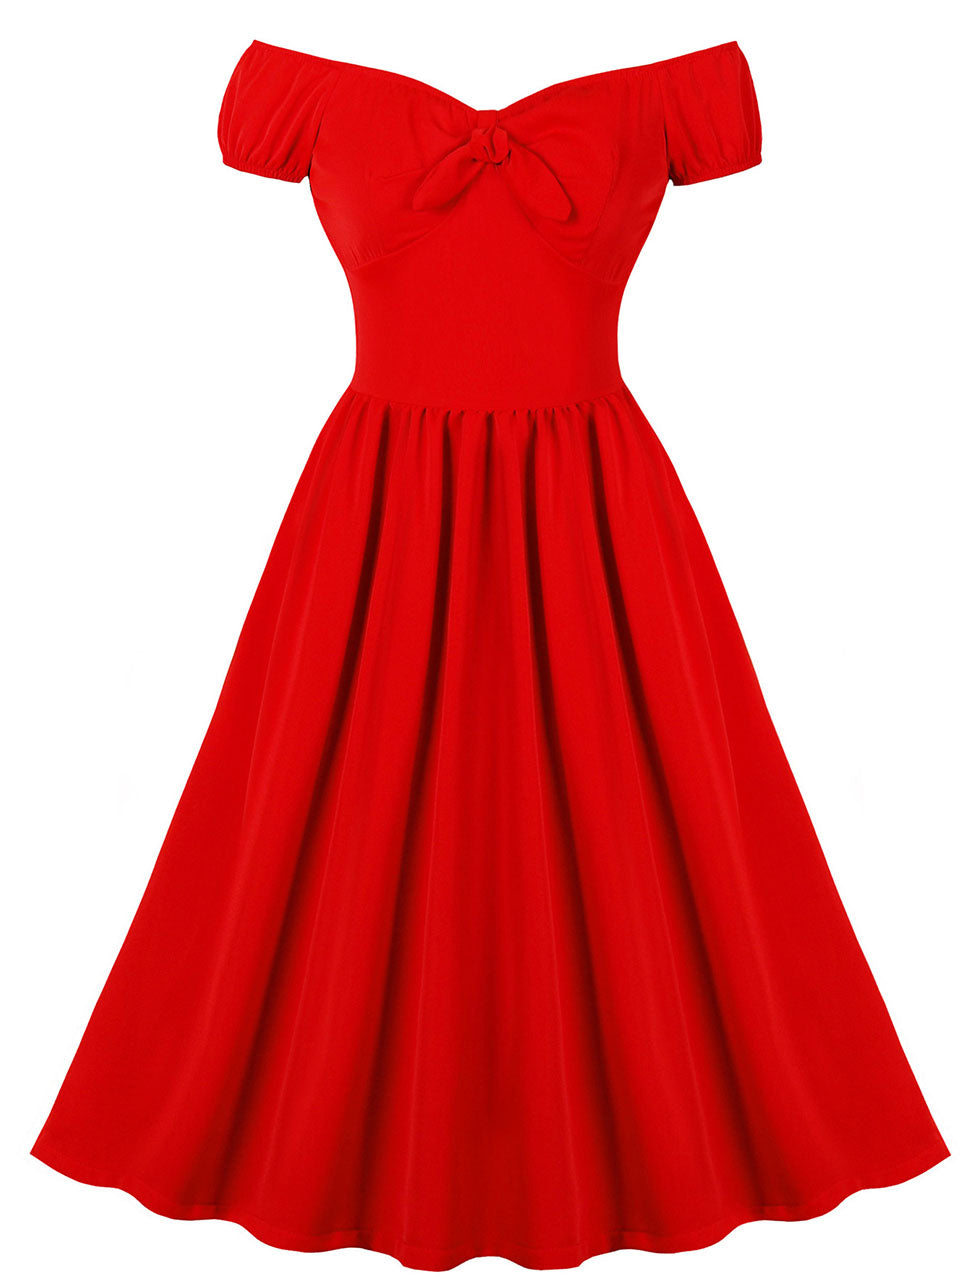 Red Off Shoulder Short Sleeve Vintage Swing Dress